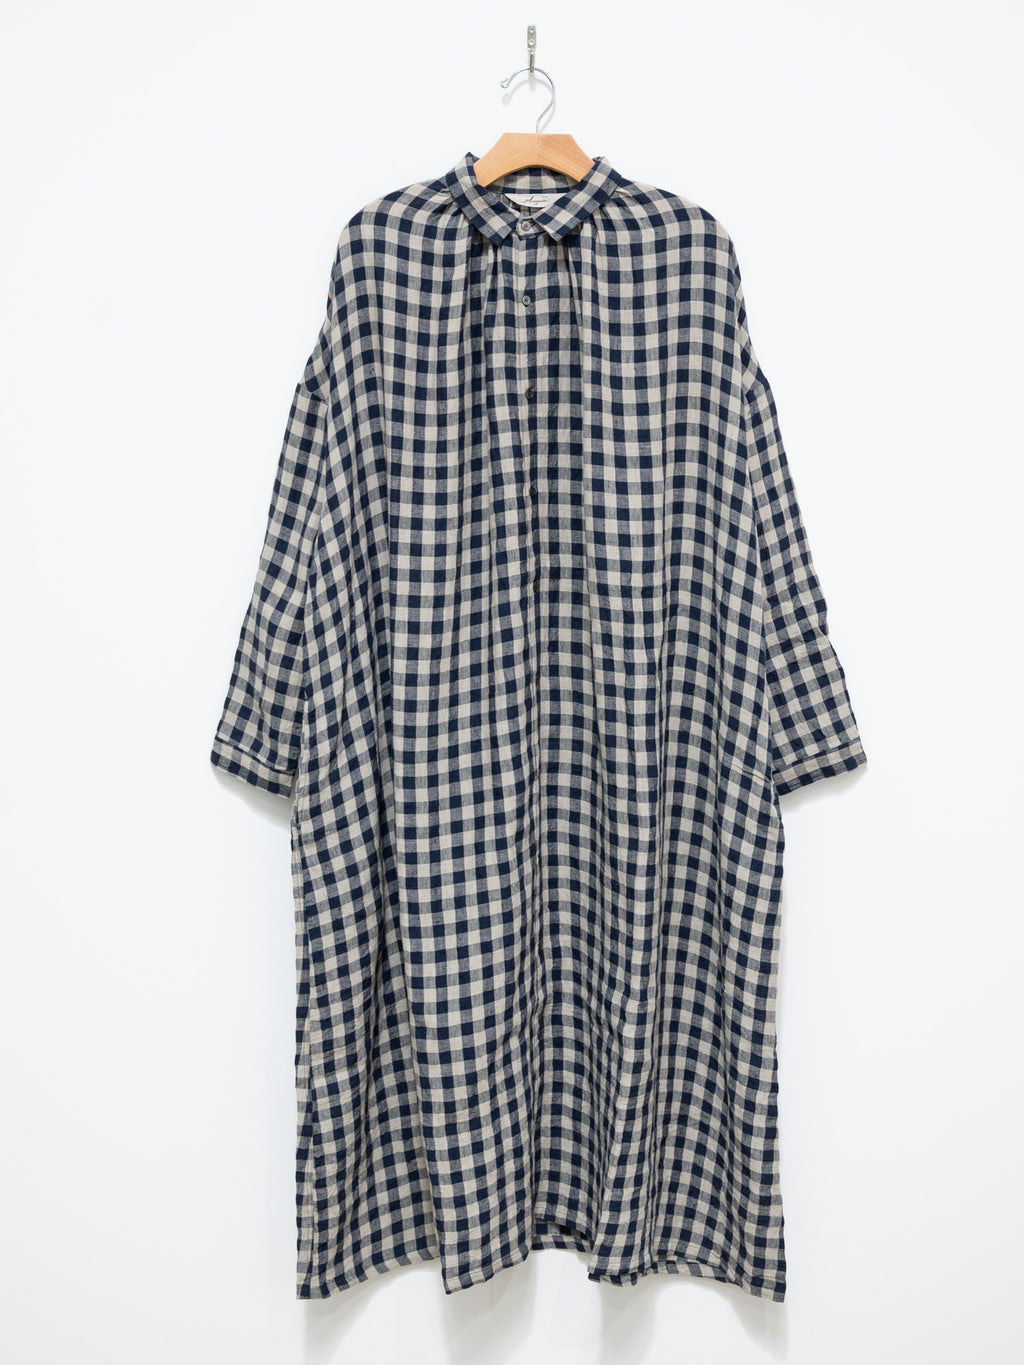 Namu Shop - Ichi Antiquites AZUMADAKI Linen Gingham Dress - Beige x Navy